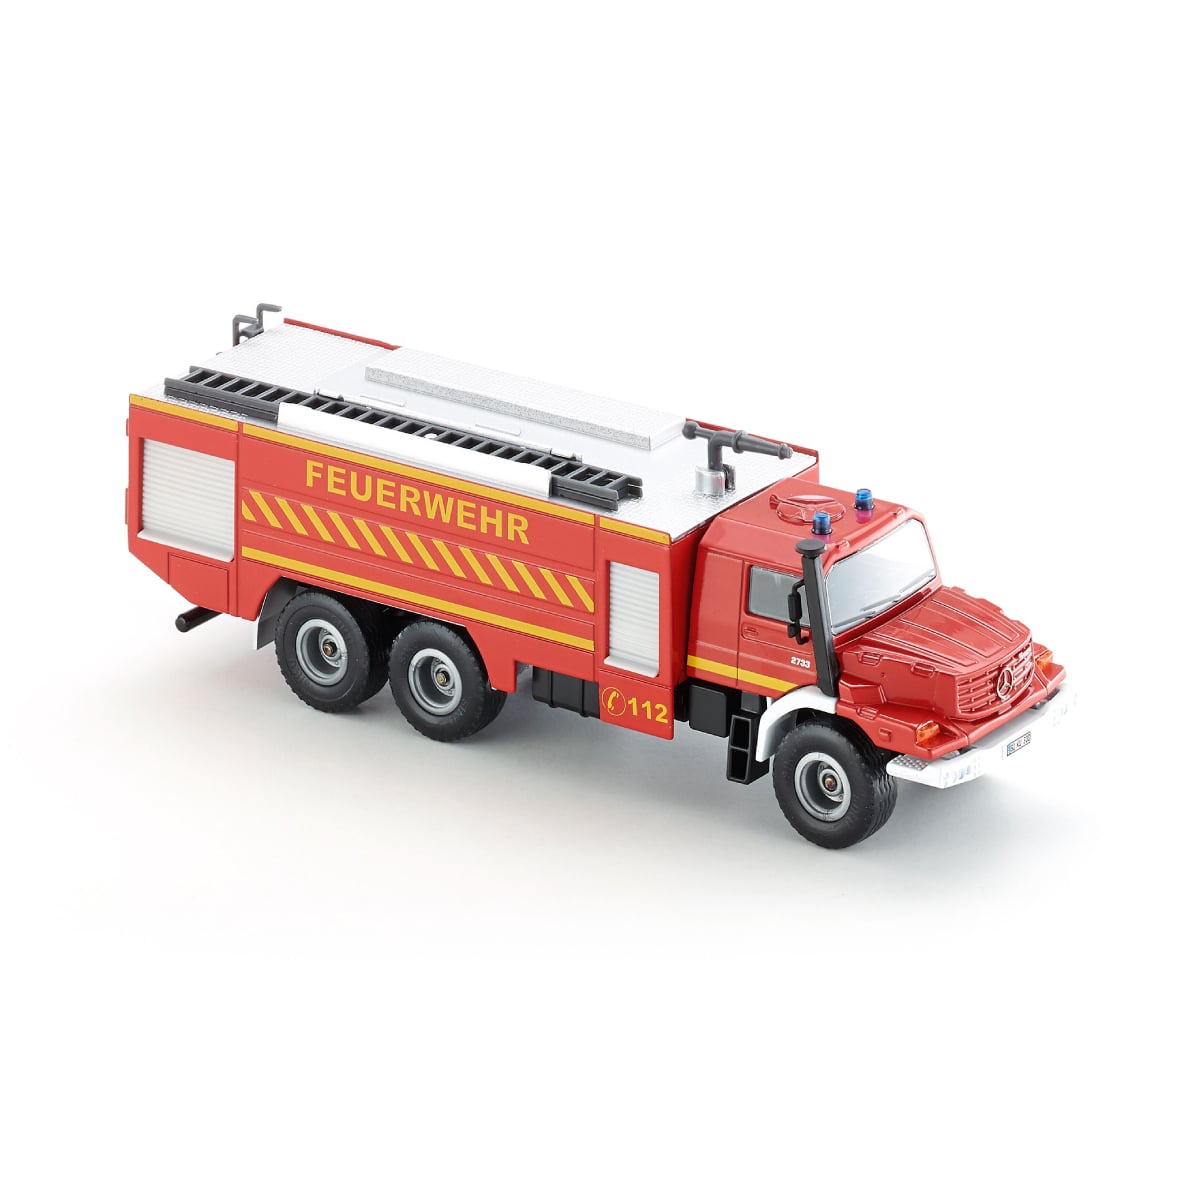 メルセデス・ベンツ 消防車: ボーネルンド オンラインショップ。世界中